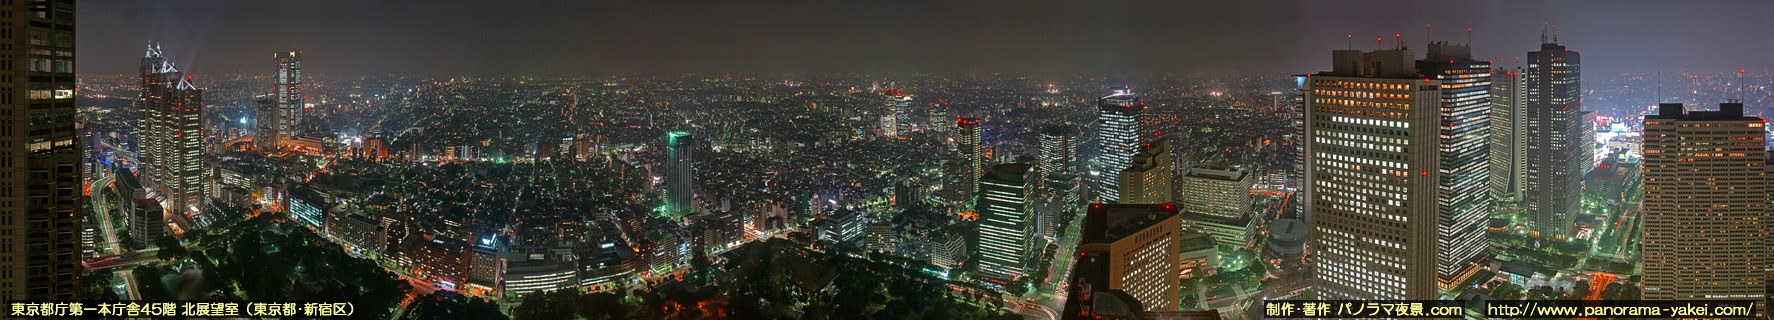 東京都庁展望室（北展望室）からのパノラマ夜景写真